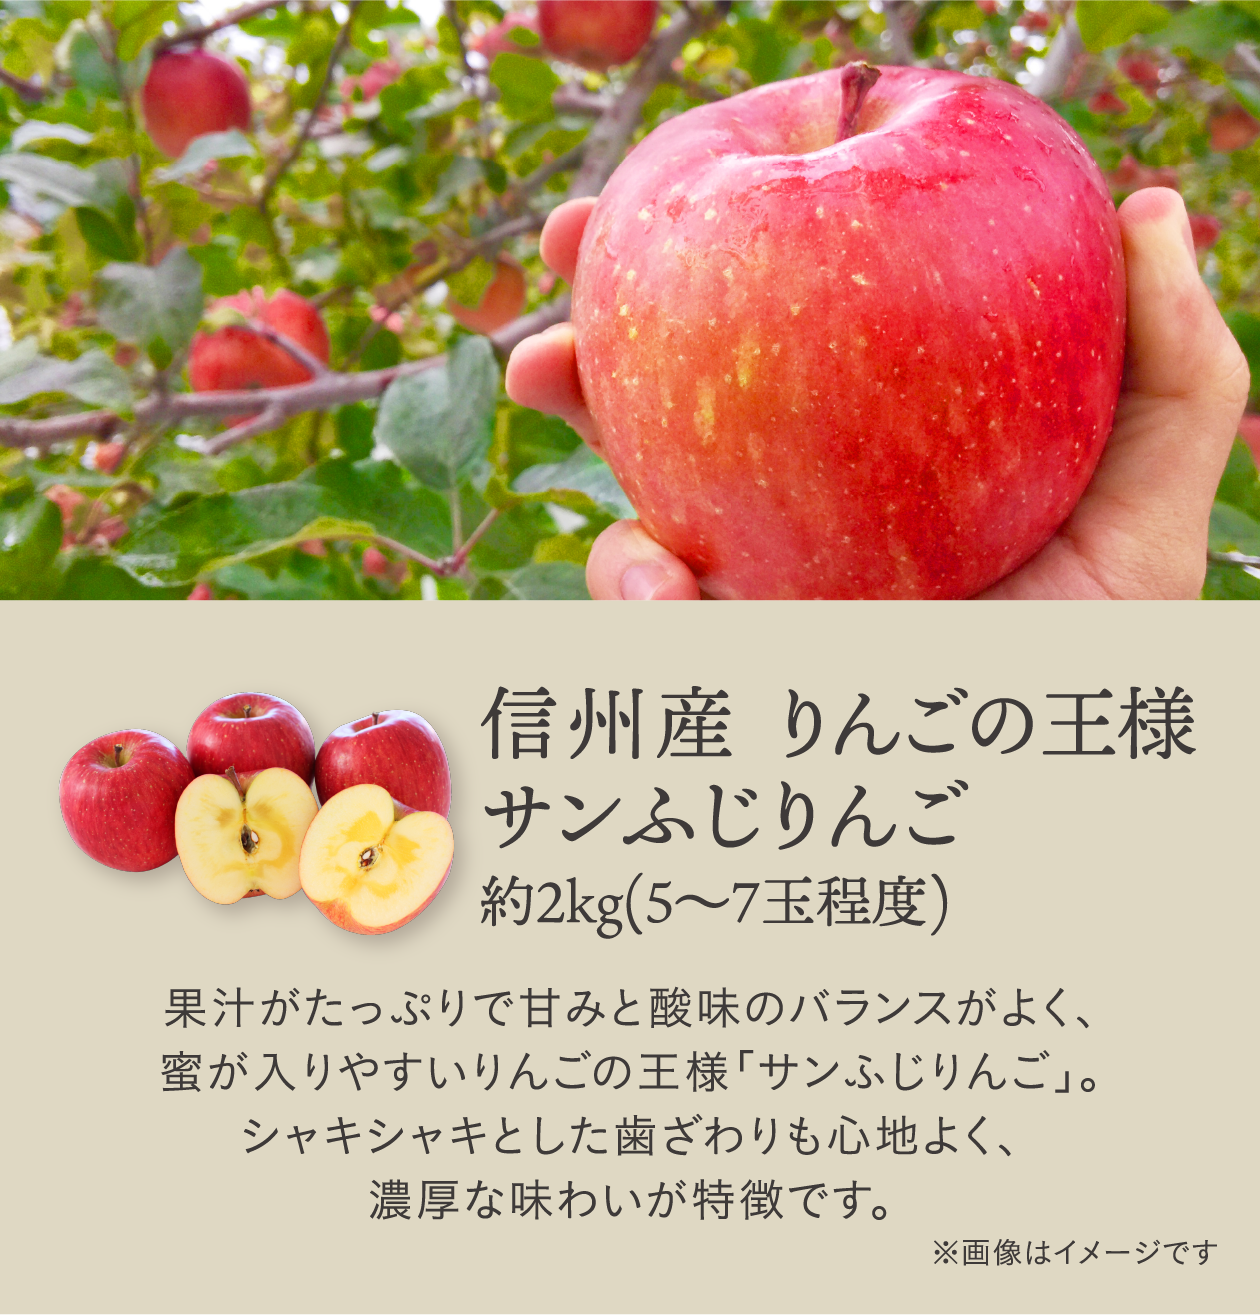 信州産 りんごの王様サンふじりんご